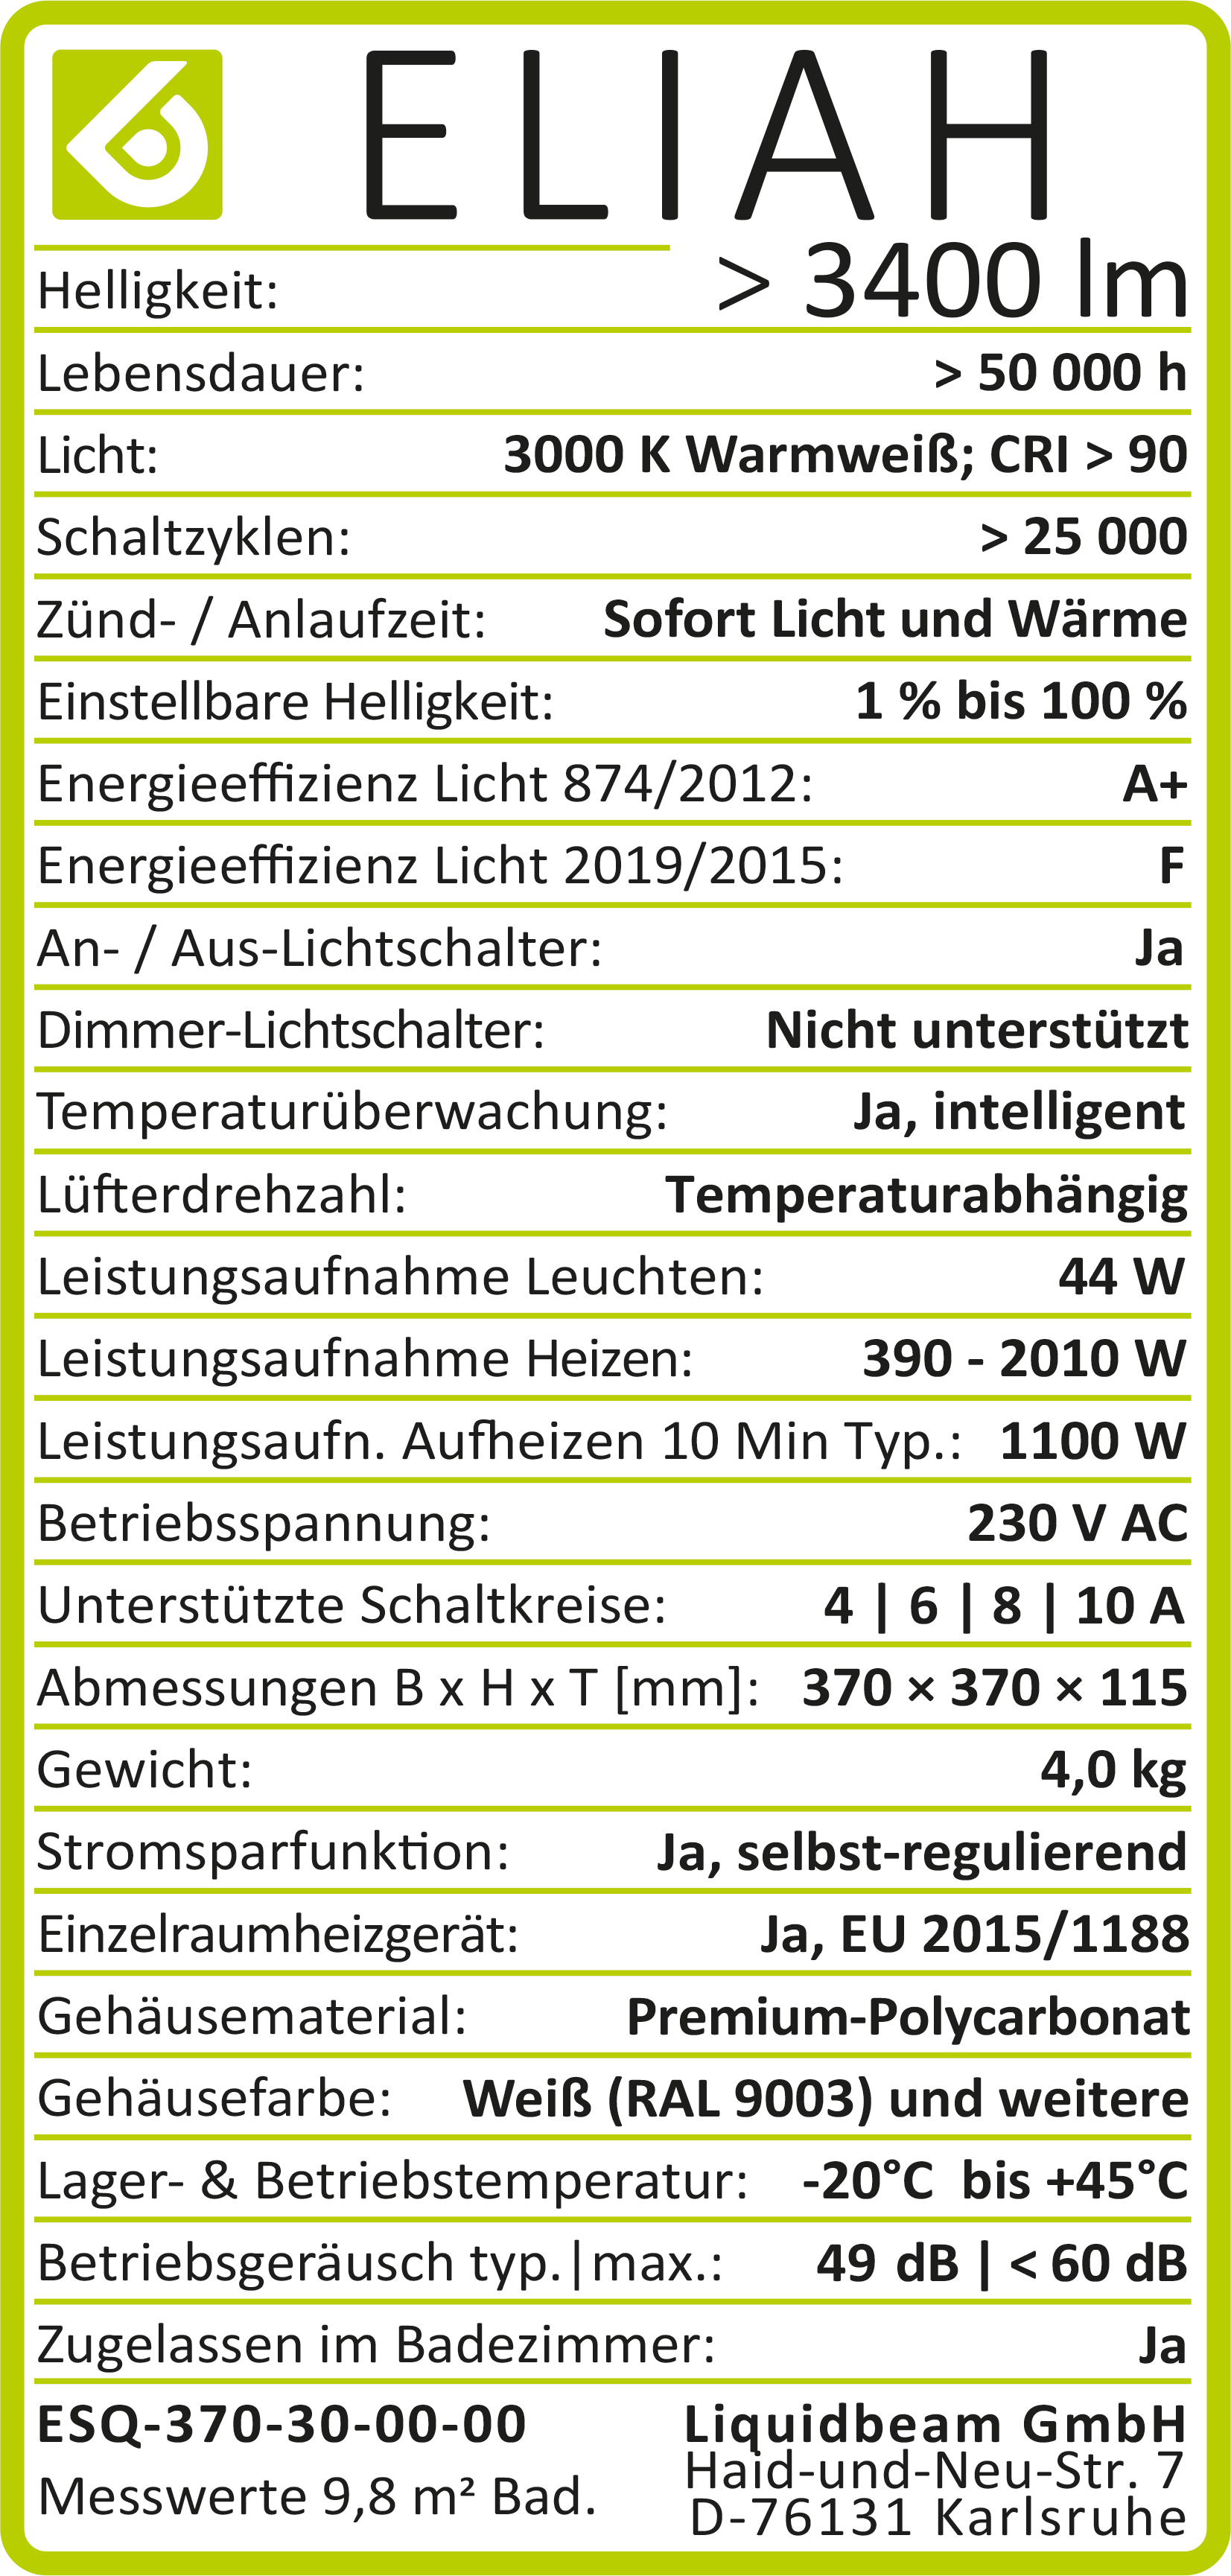 ELIAH technical Daten as of 2021